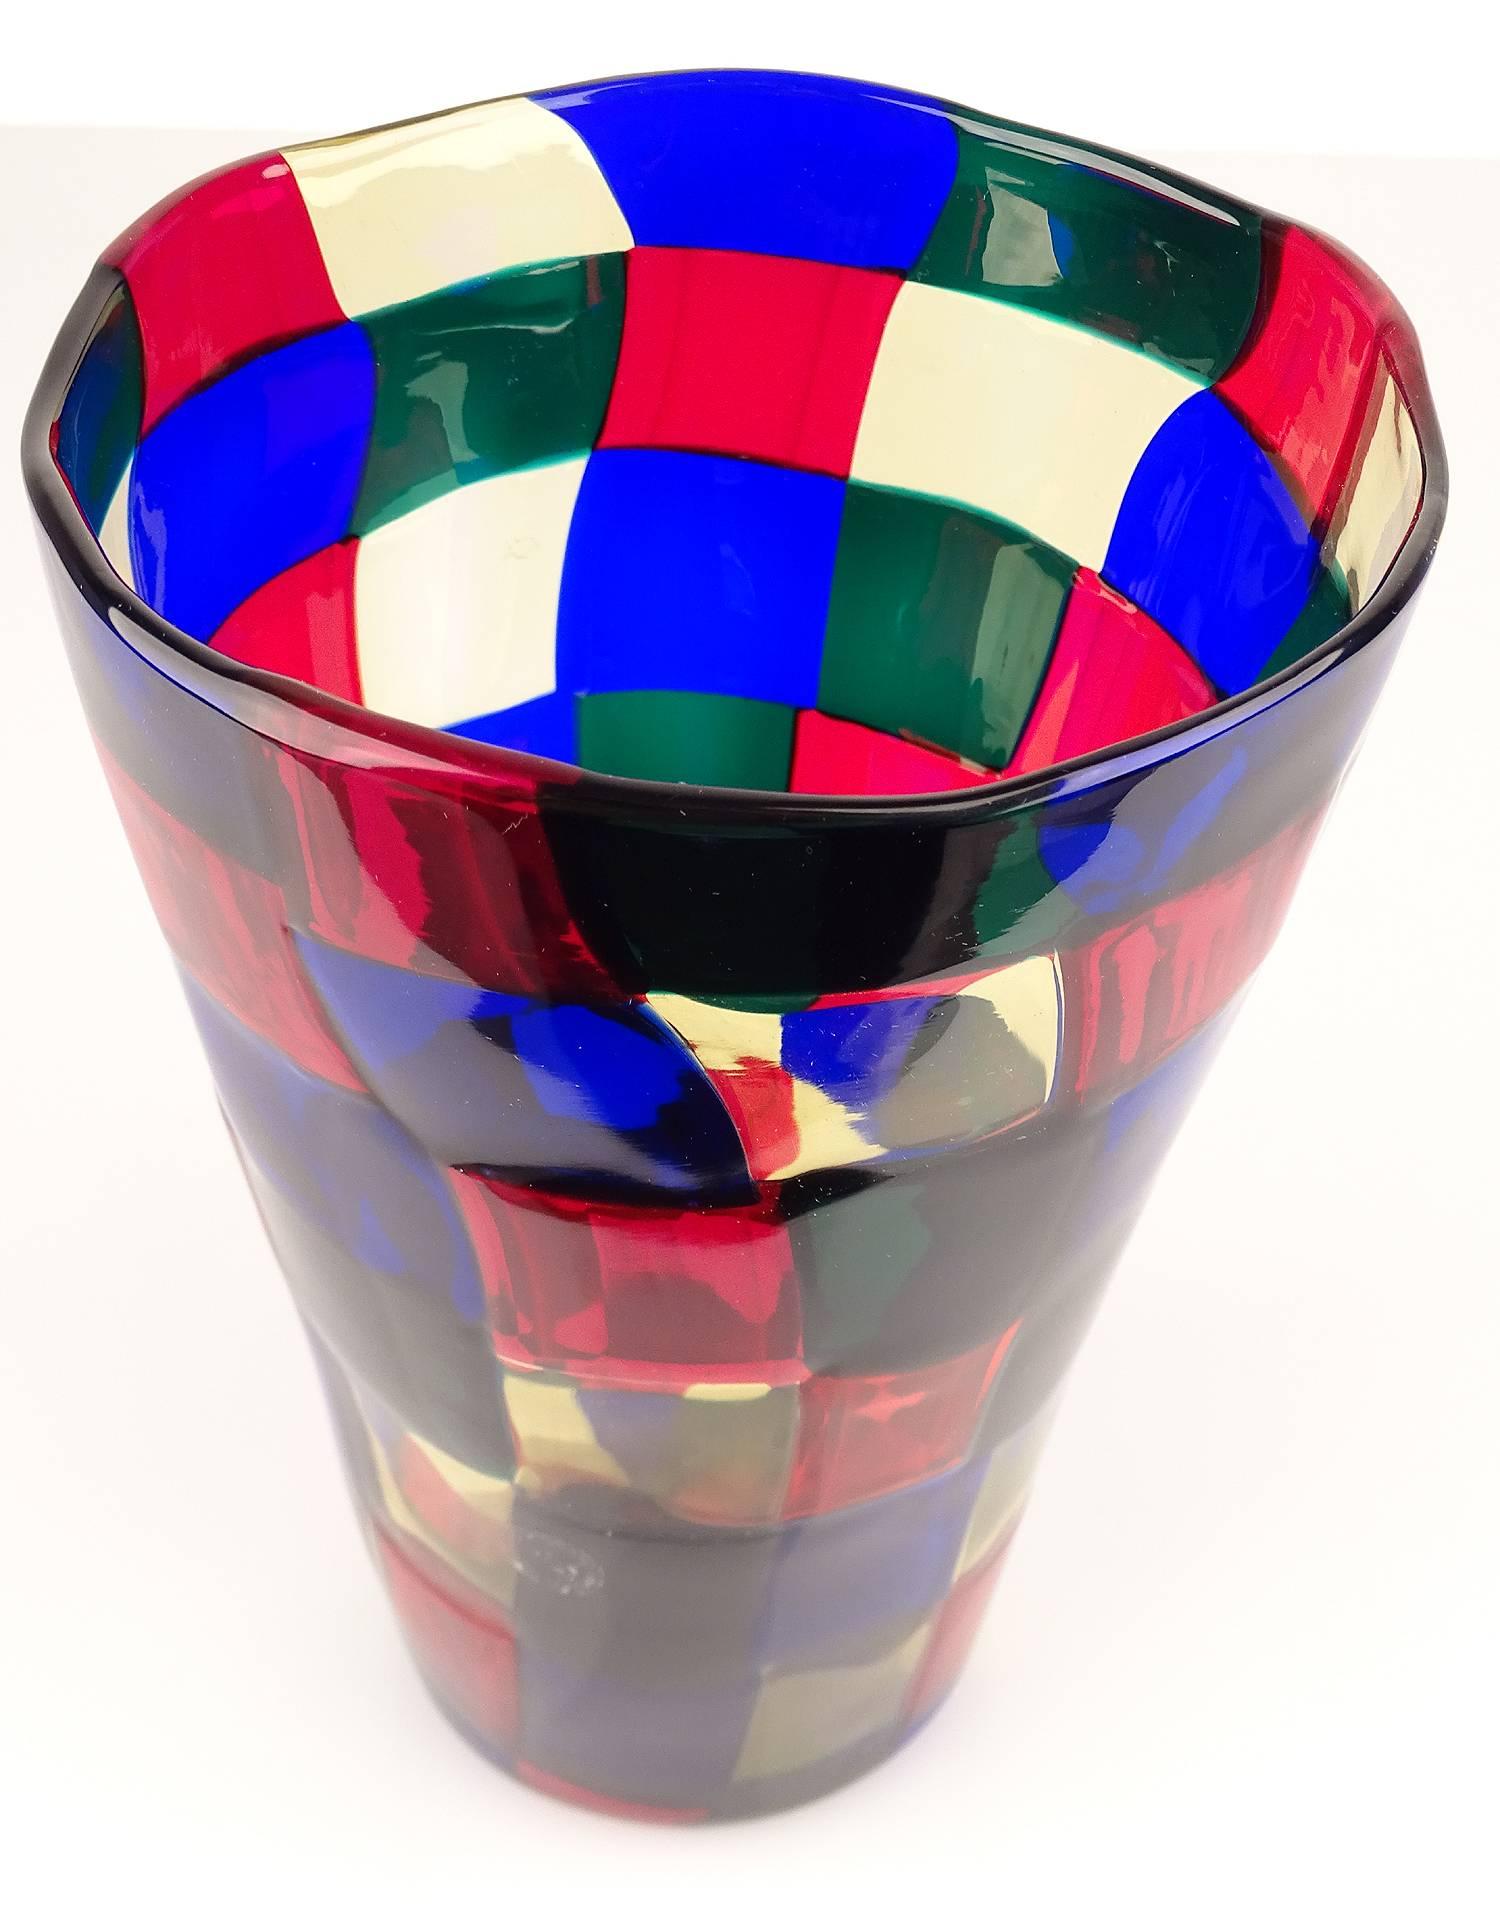 Murano Glass Pezzato Vase by Fulvio Bianconi for Venini, from the Serie 